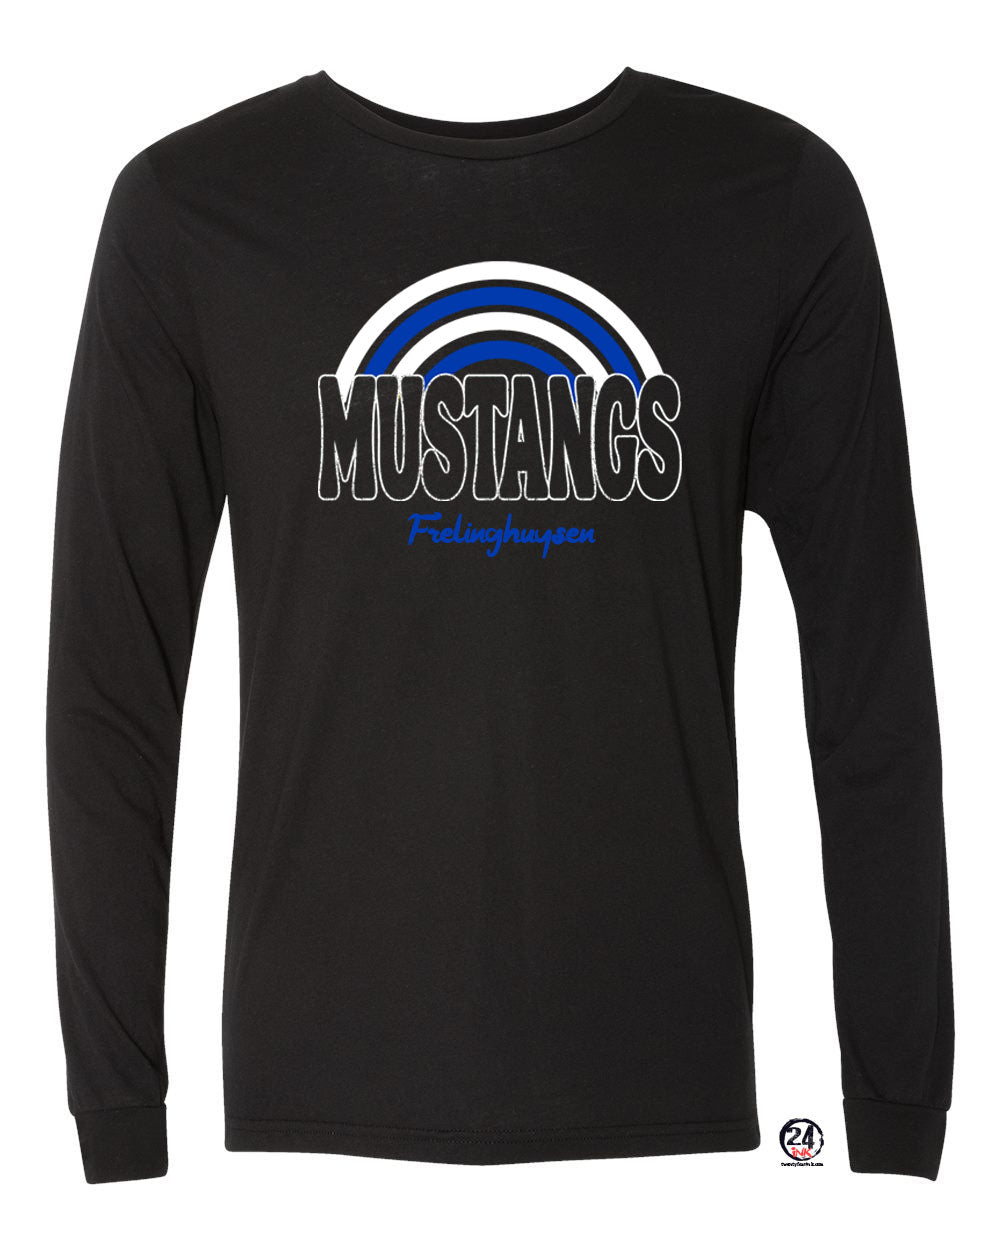 Mustangs Design 1 Long Sleeve Shirt